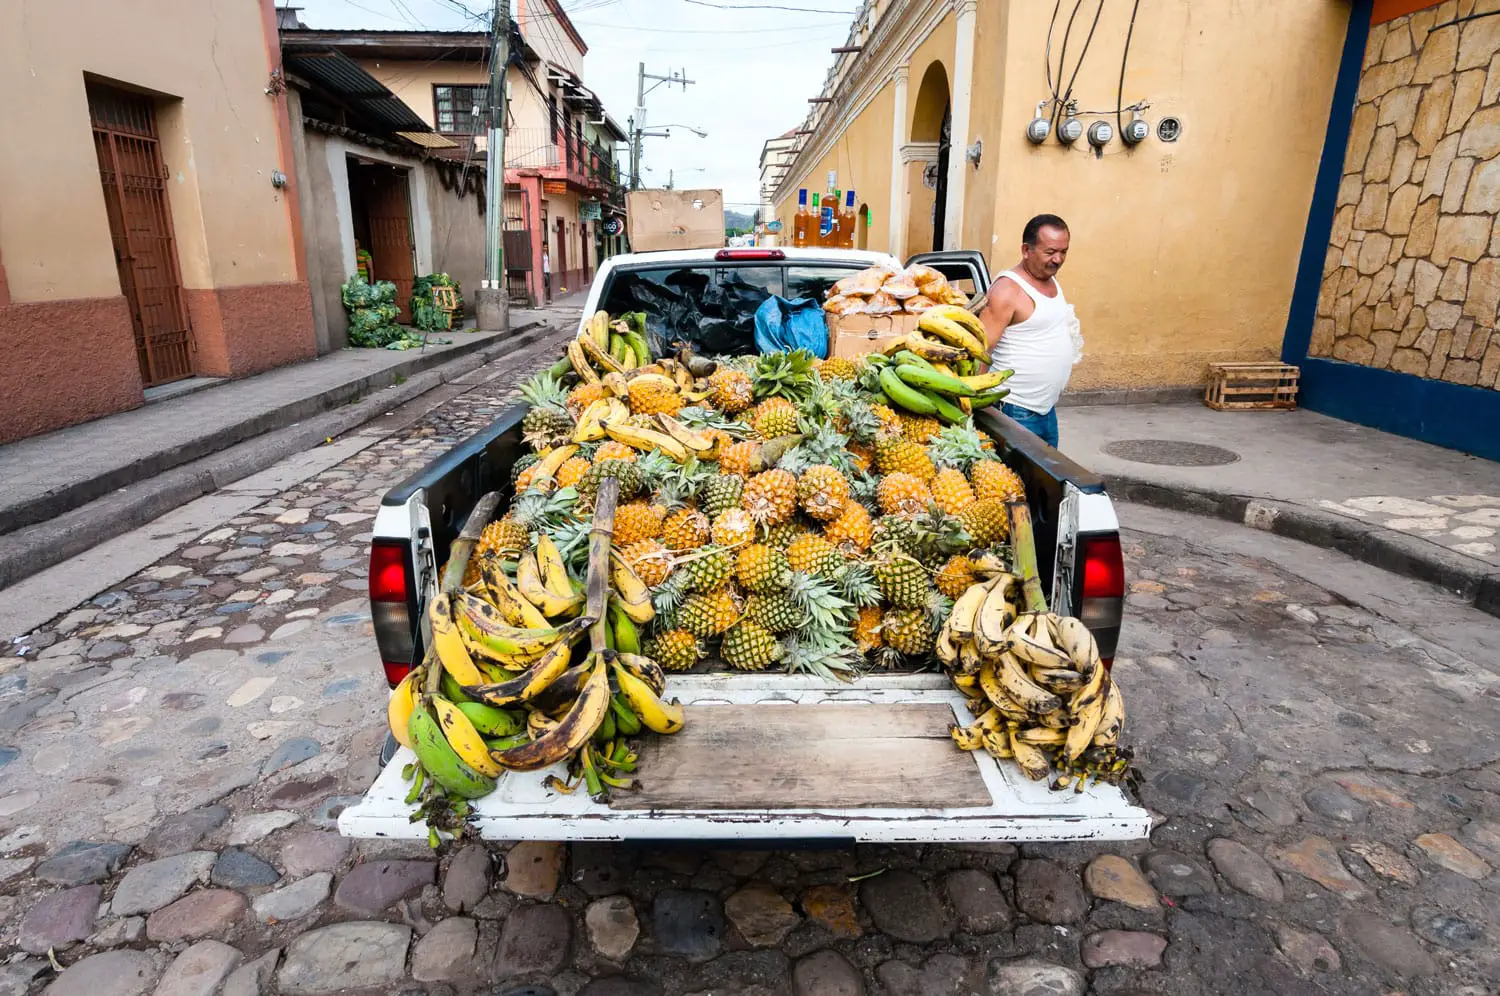 Αγρότης της Ονδούρας που παρουσιάζει τις καλλιέργειες ανανά του σε μια τοπική αγορά